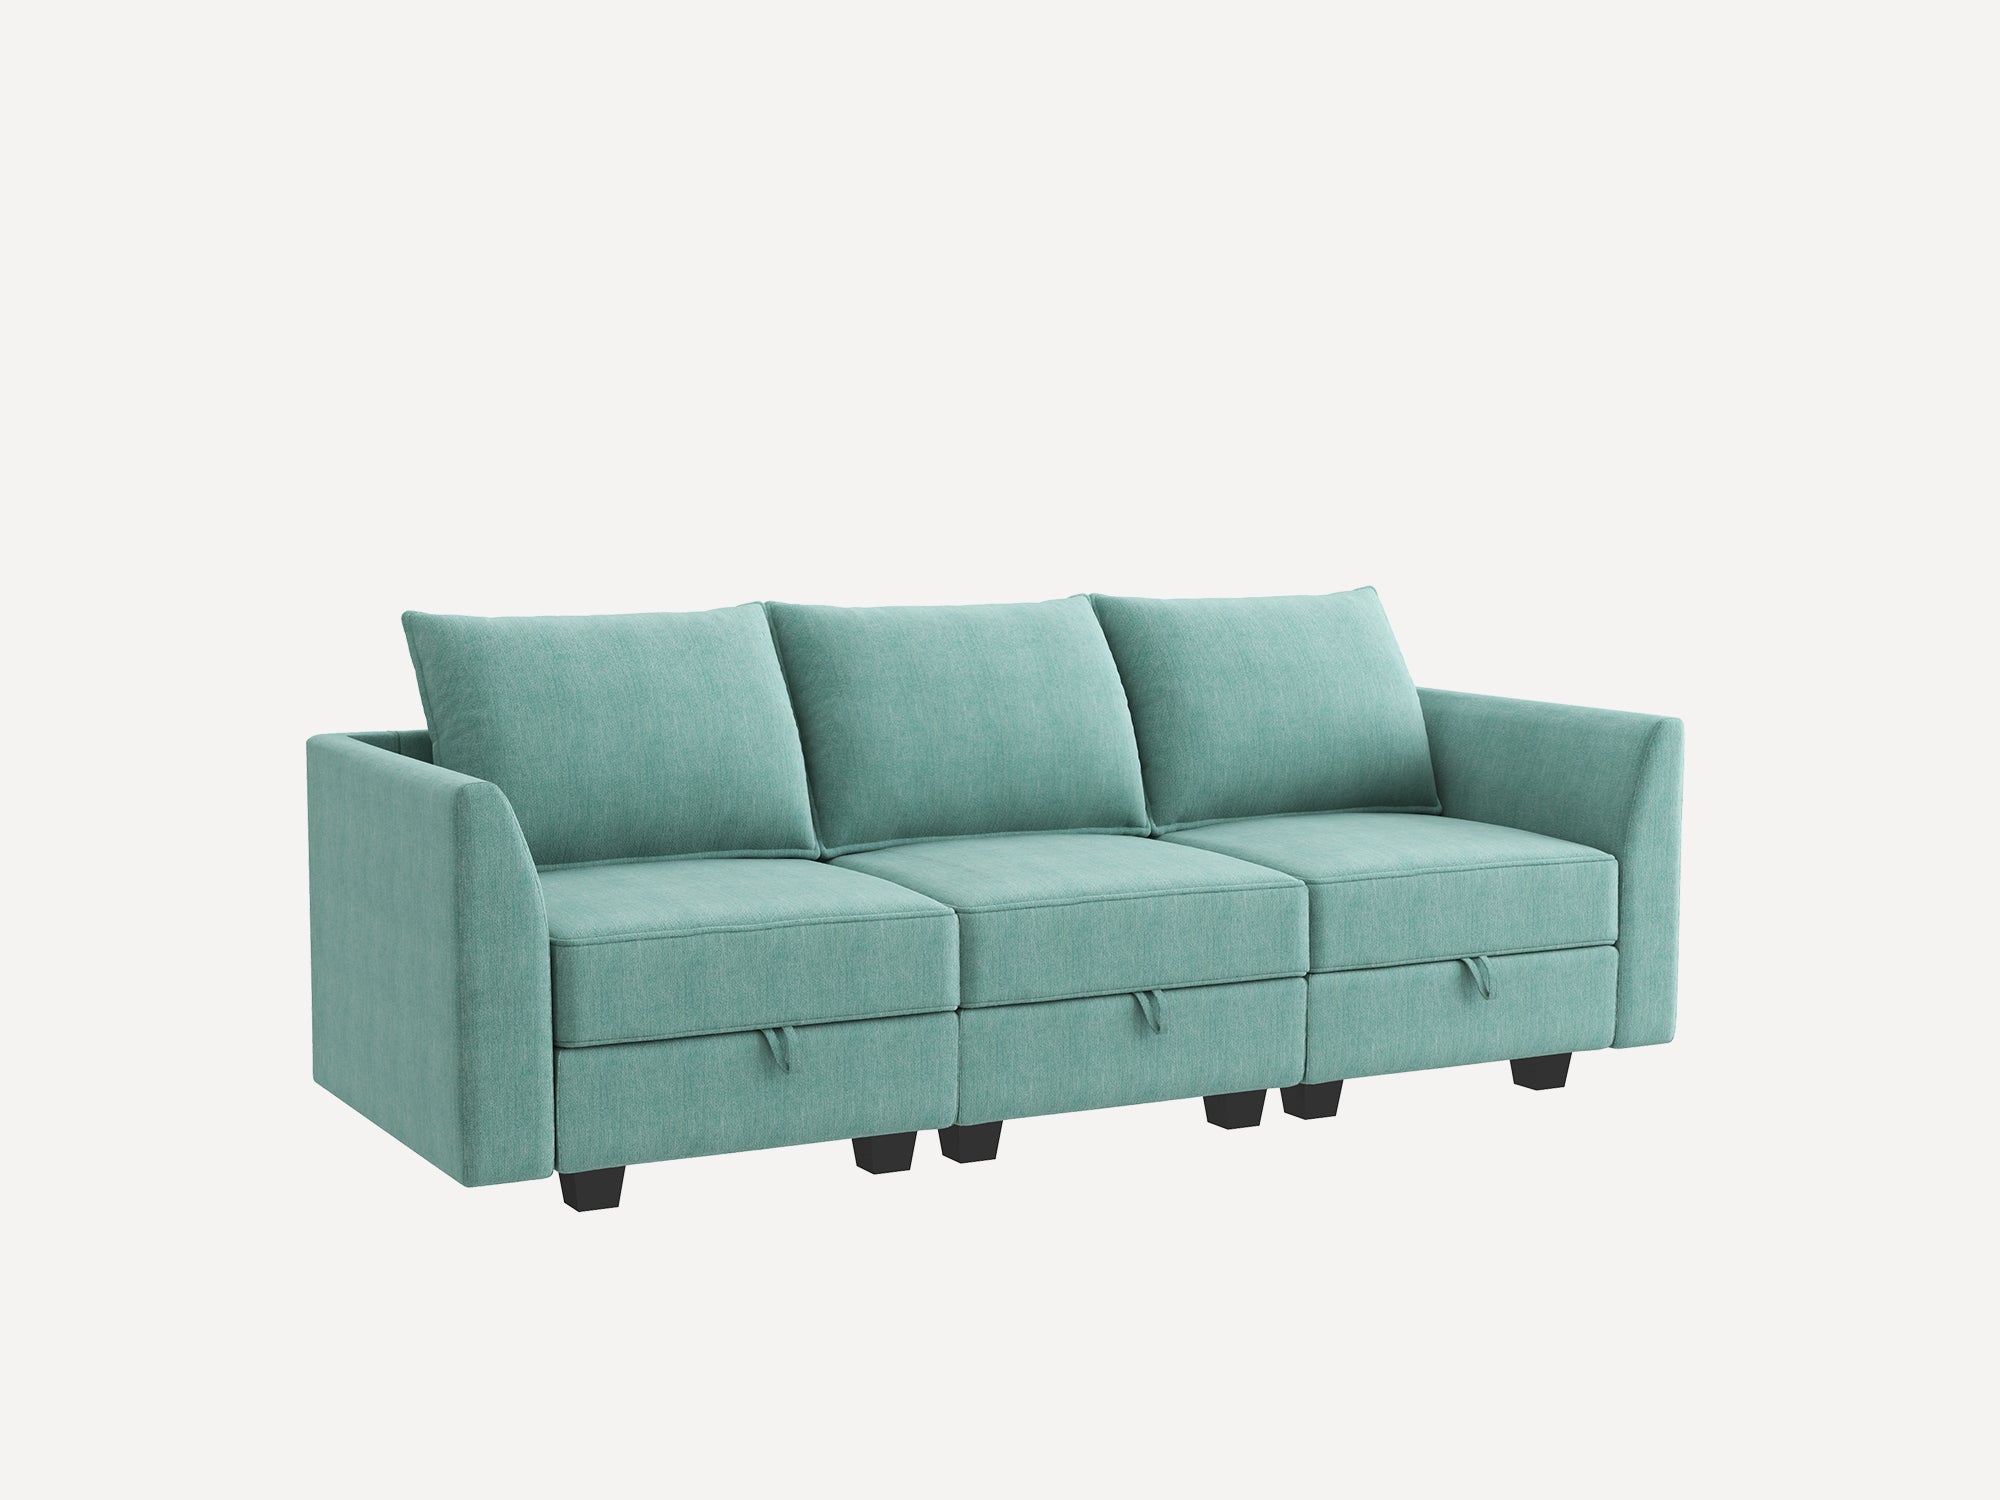 HONBAY 3-Seat Modular Sofa with Storage#Color_Aqua Blue